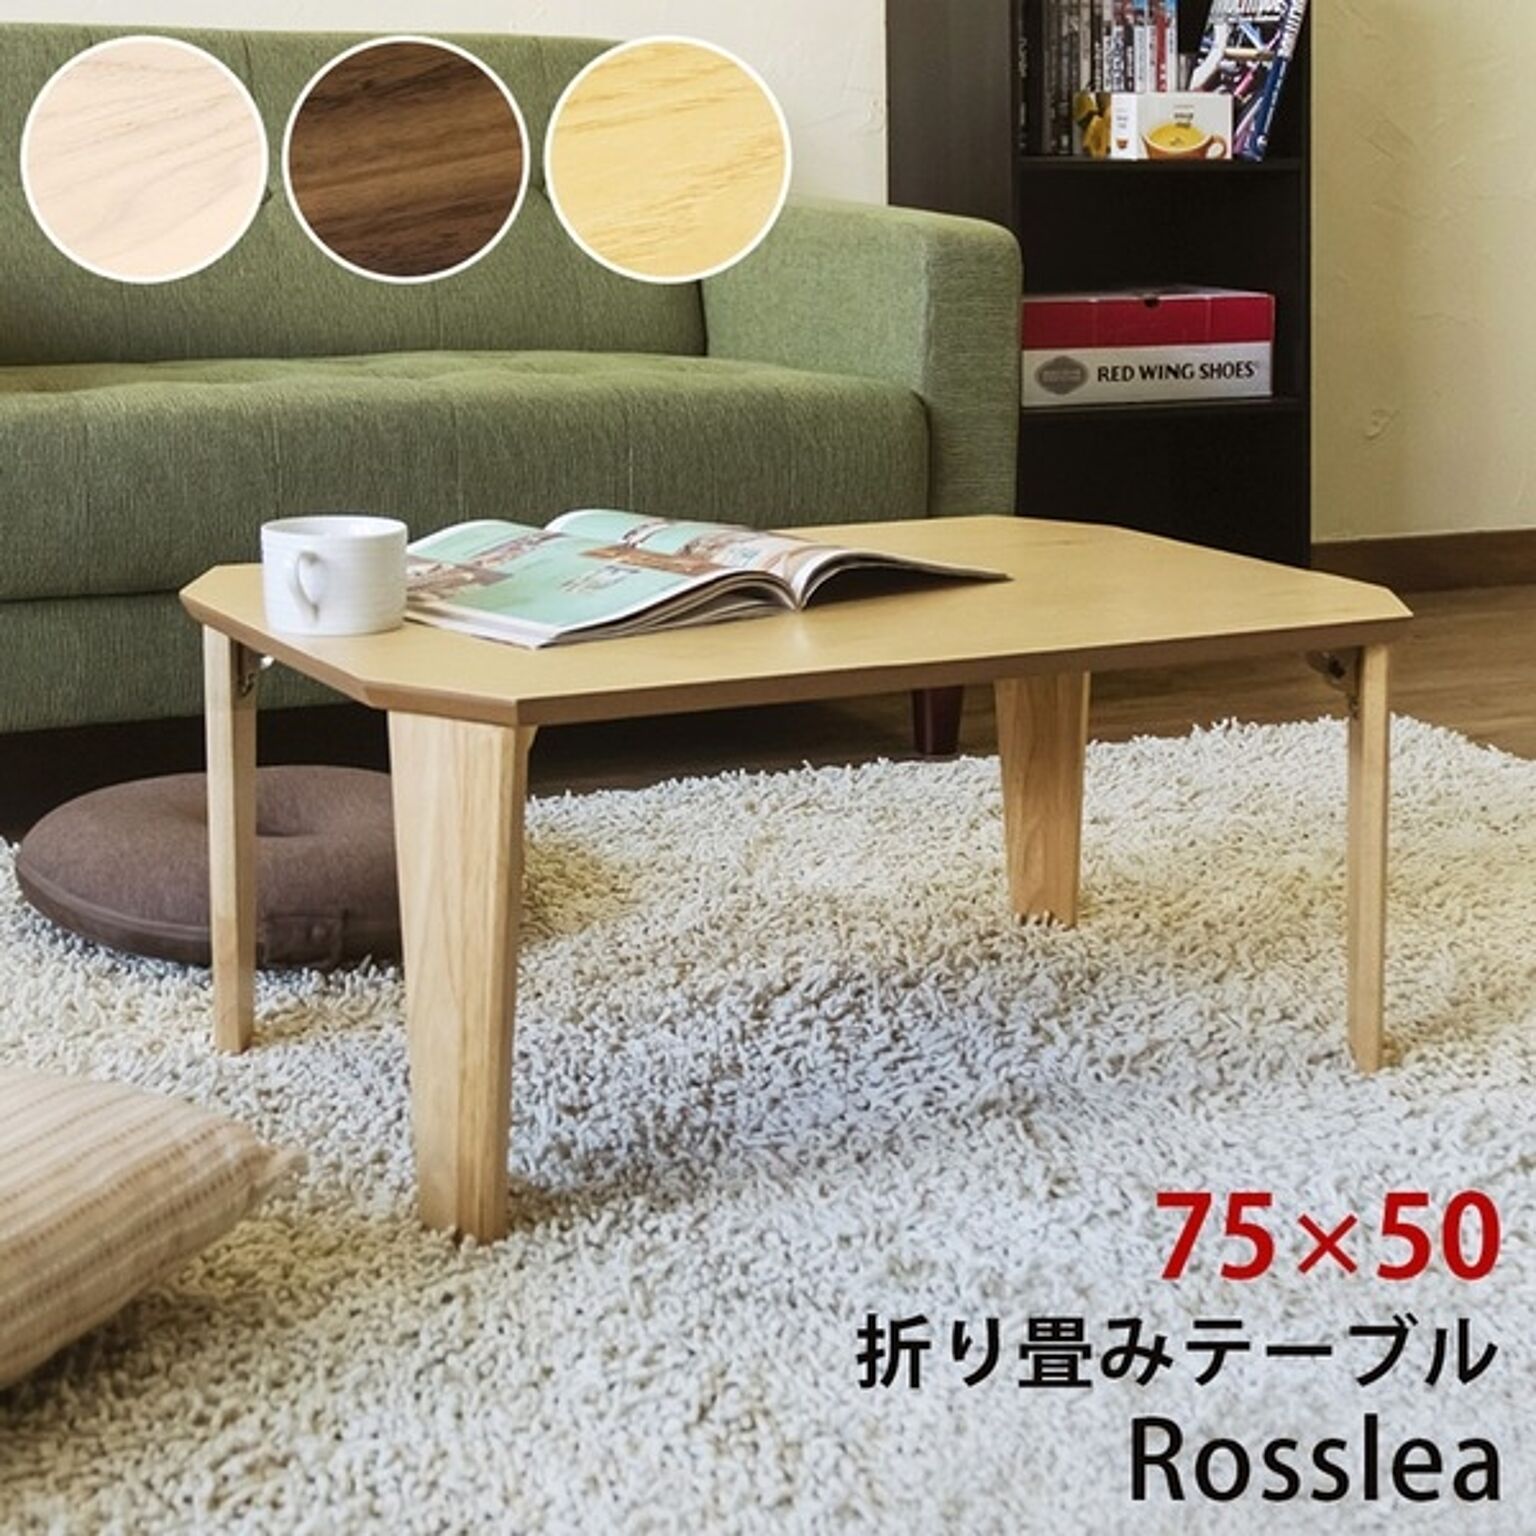 Rosslea 折り畳みテーブル 65cm ナチュラル